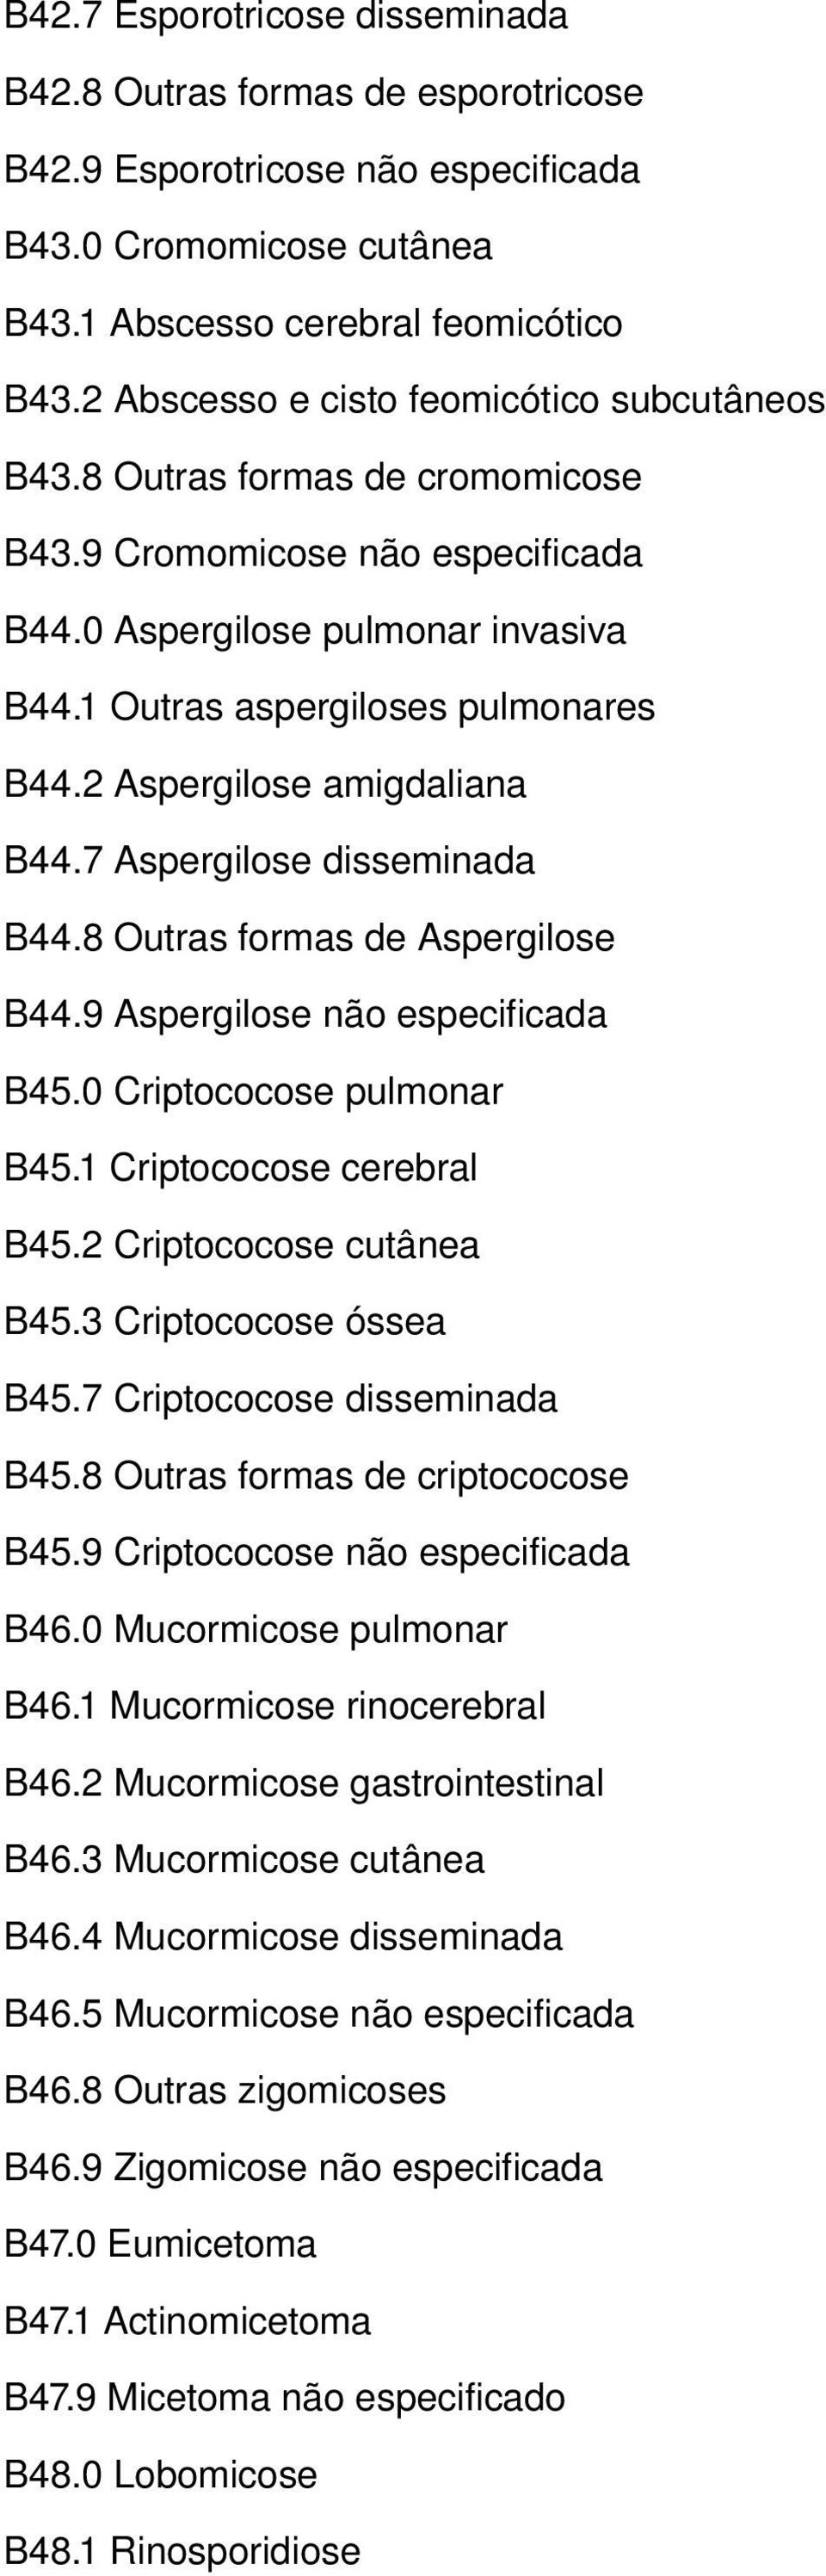 2 Aspergilose amigdaliana B44.7 Aspergilose disseminada B44.8 Outras formas de Aspergilose B44.9 Aspergilose não especificada B45.0 Criptococose pulmonar B45.1 Criptococose cerebral B45.